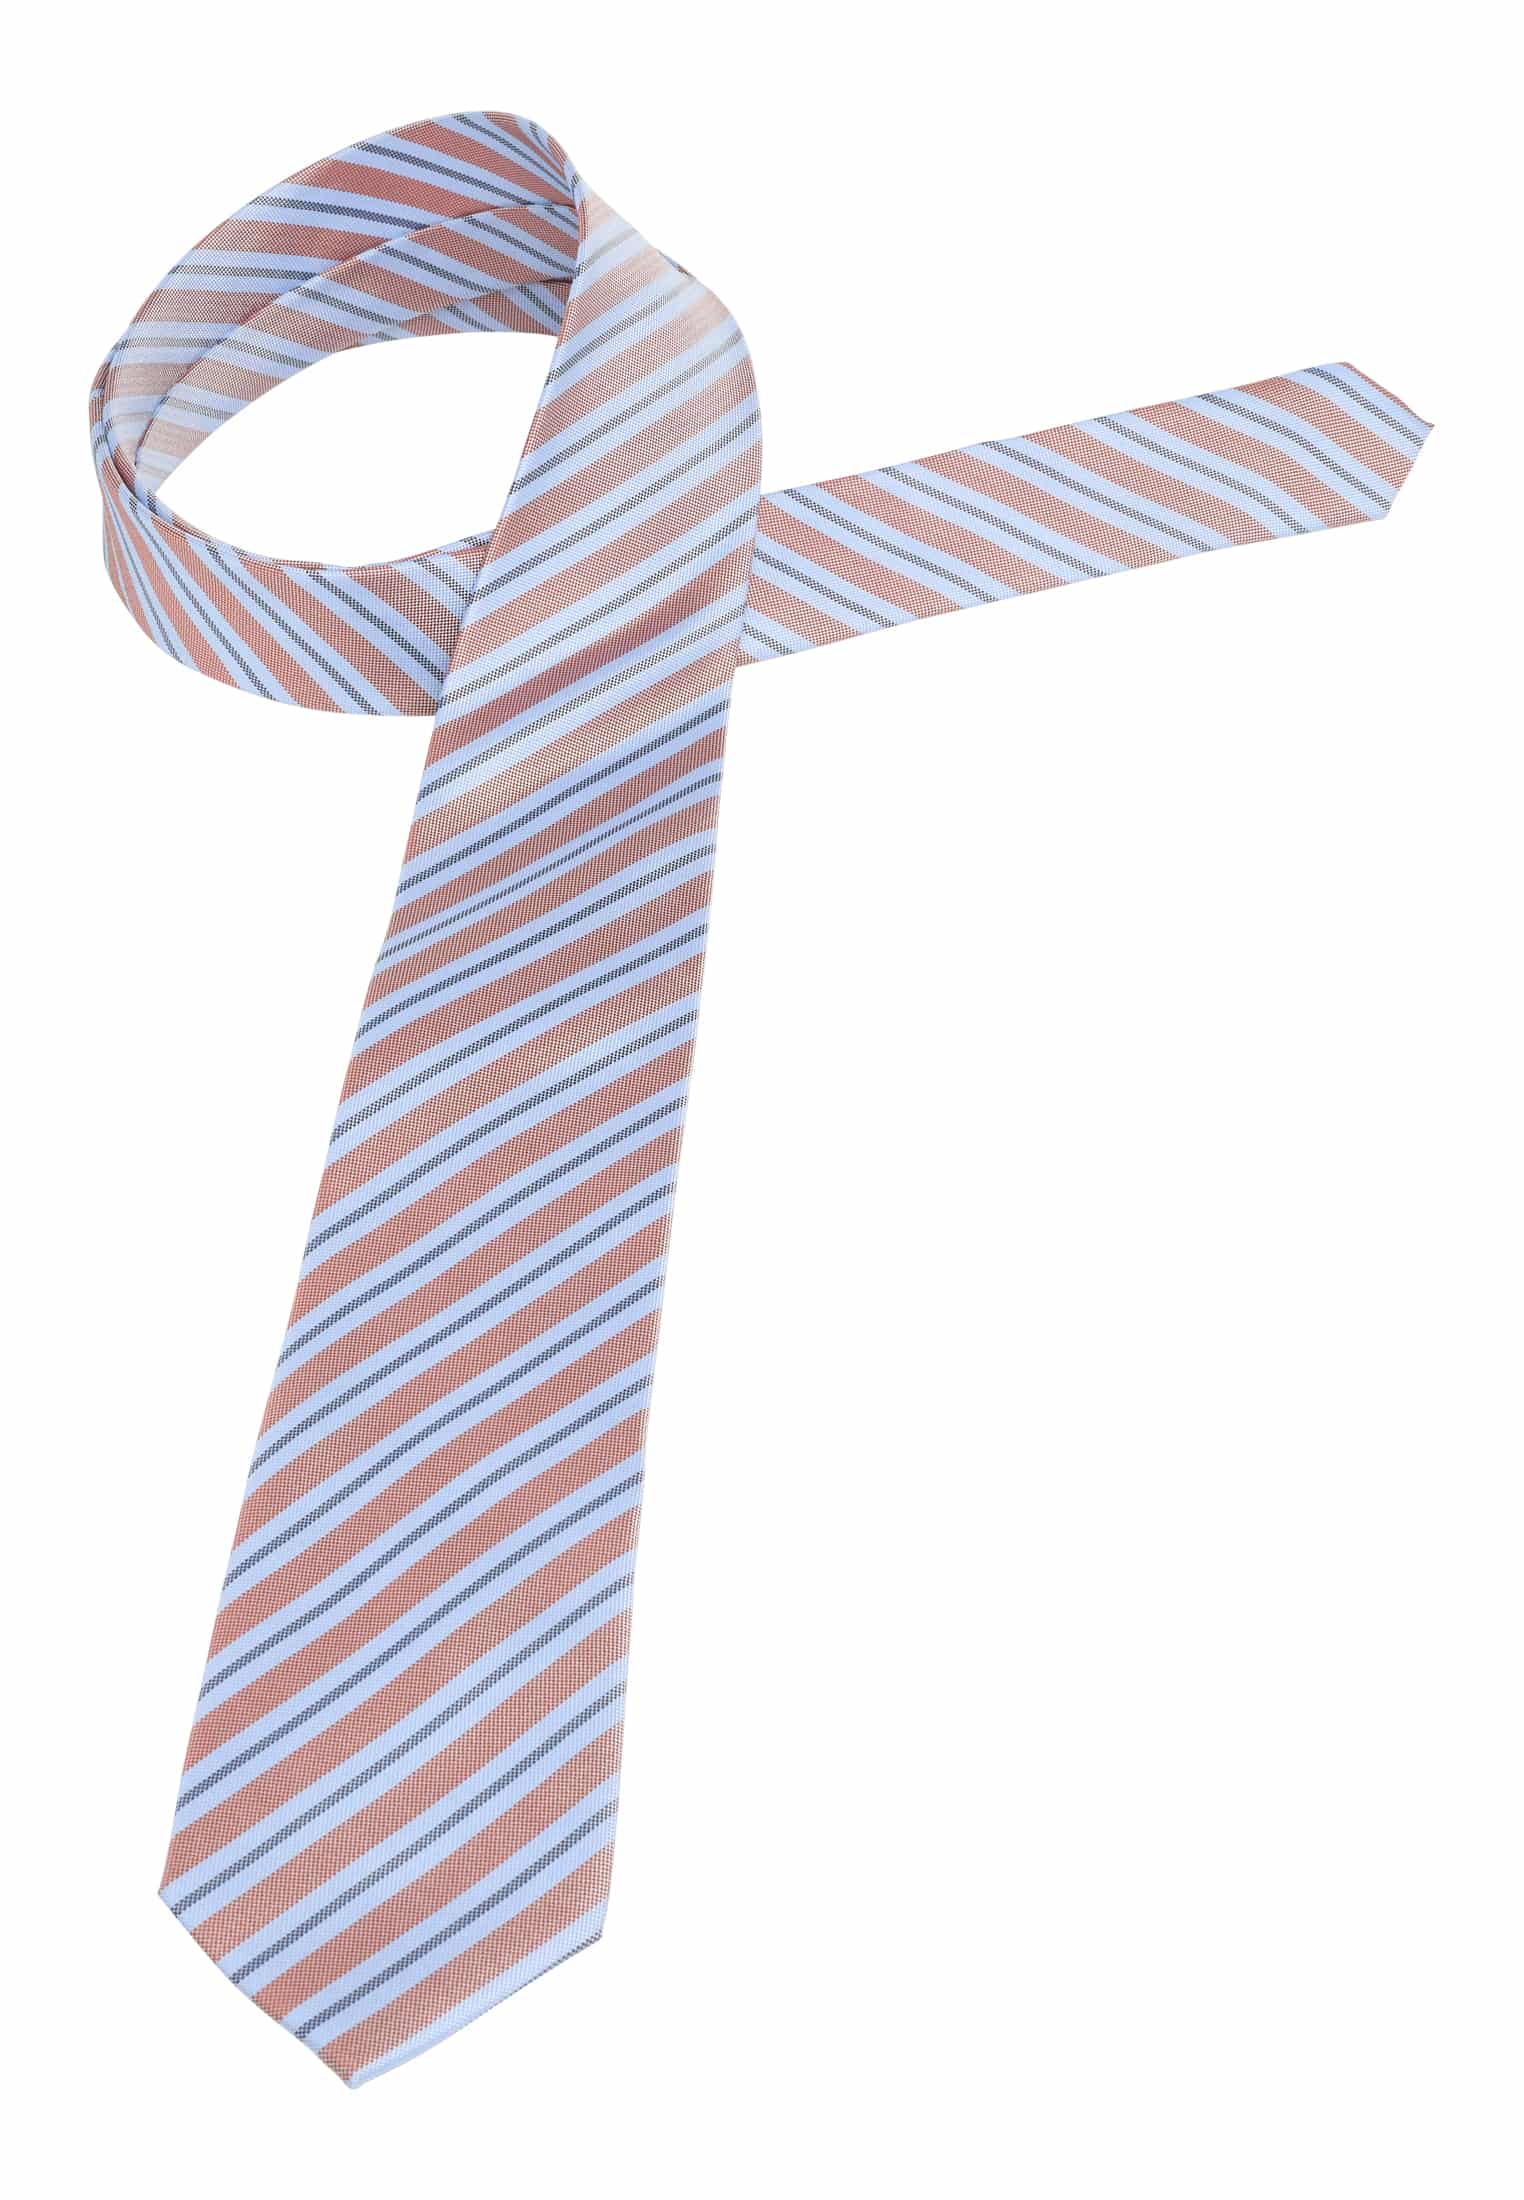 Krawatte in hellblau/orange gemustert | hellblau/orange | 142 |  1AC02006-81-33-142